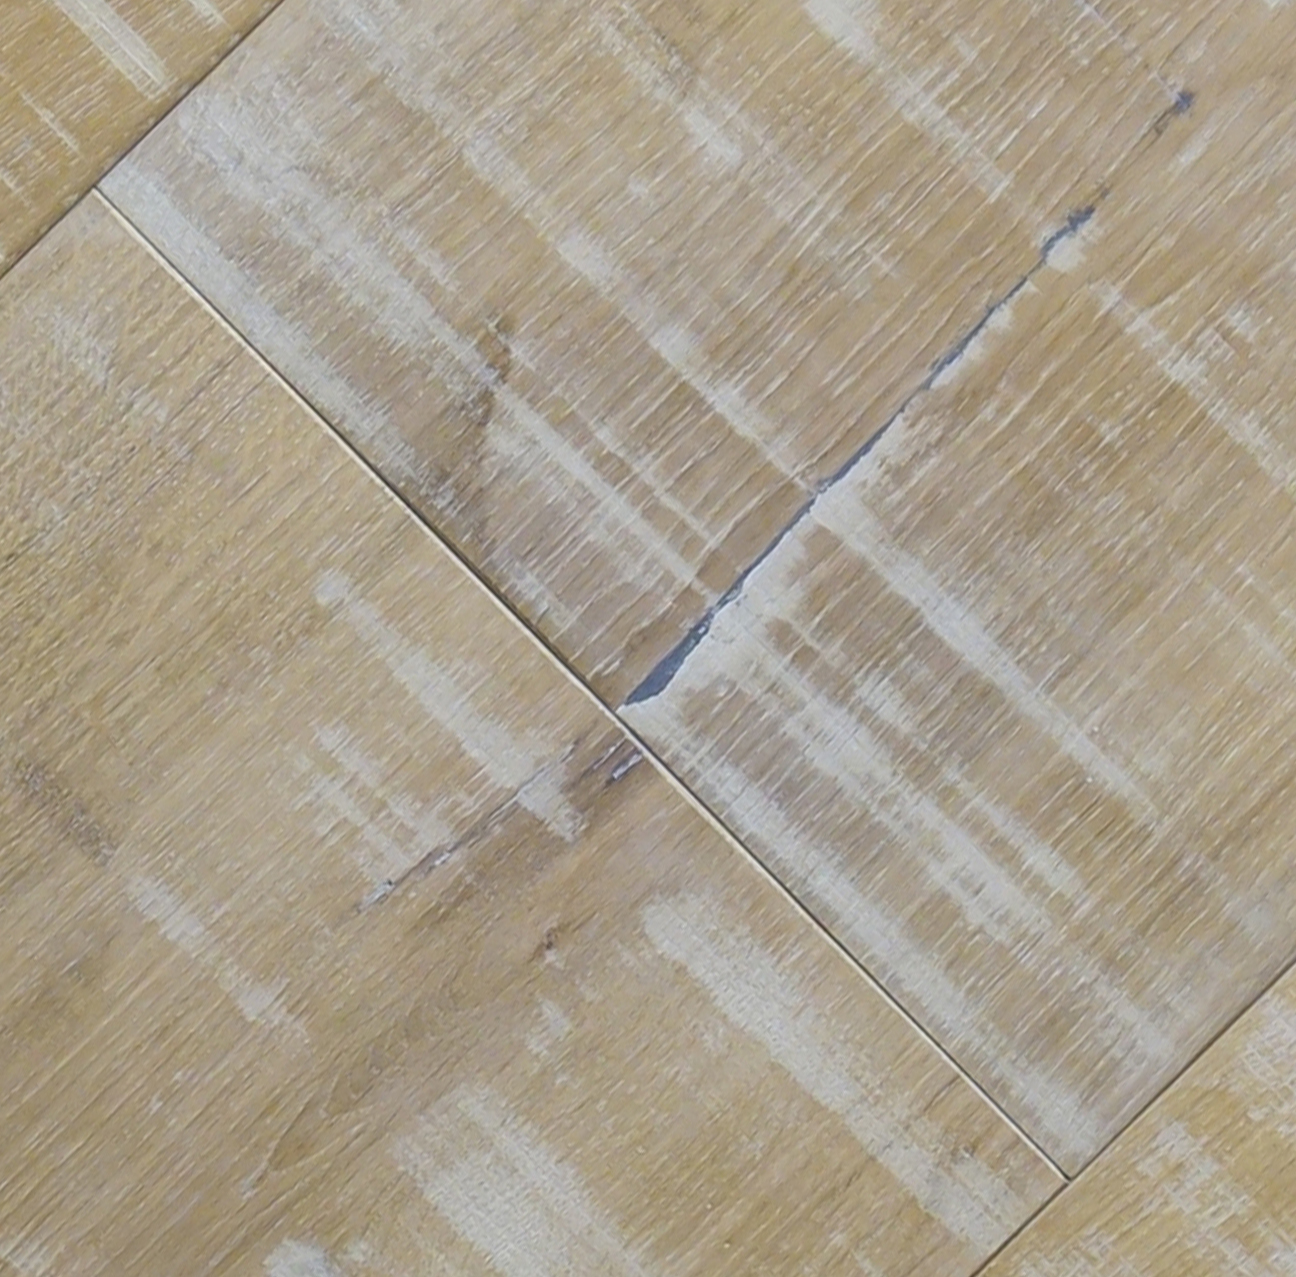 Floor-Art Largo Eiche dry aged 7025